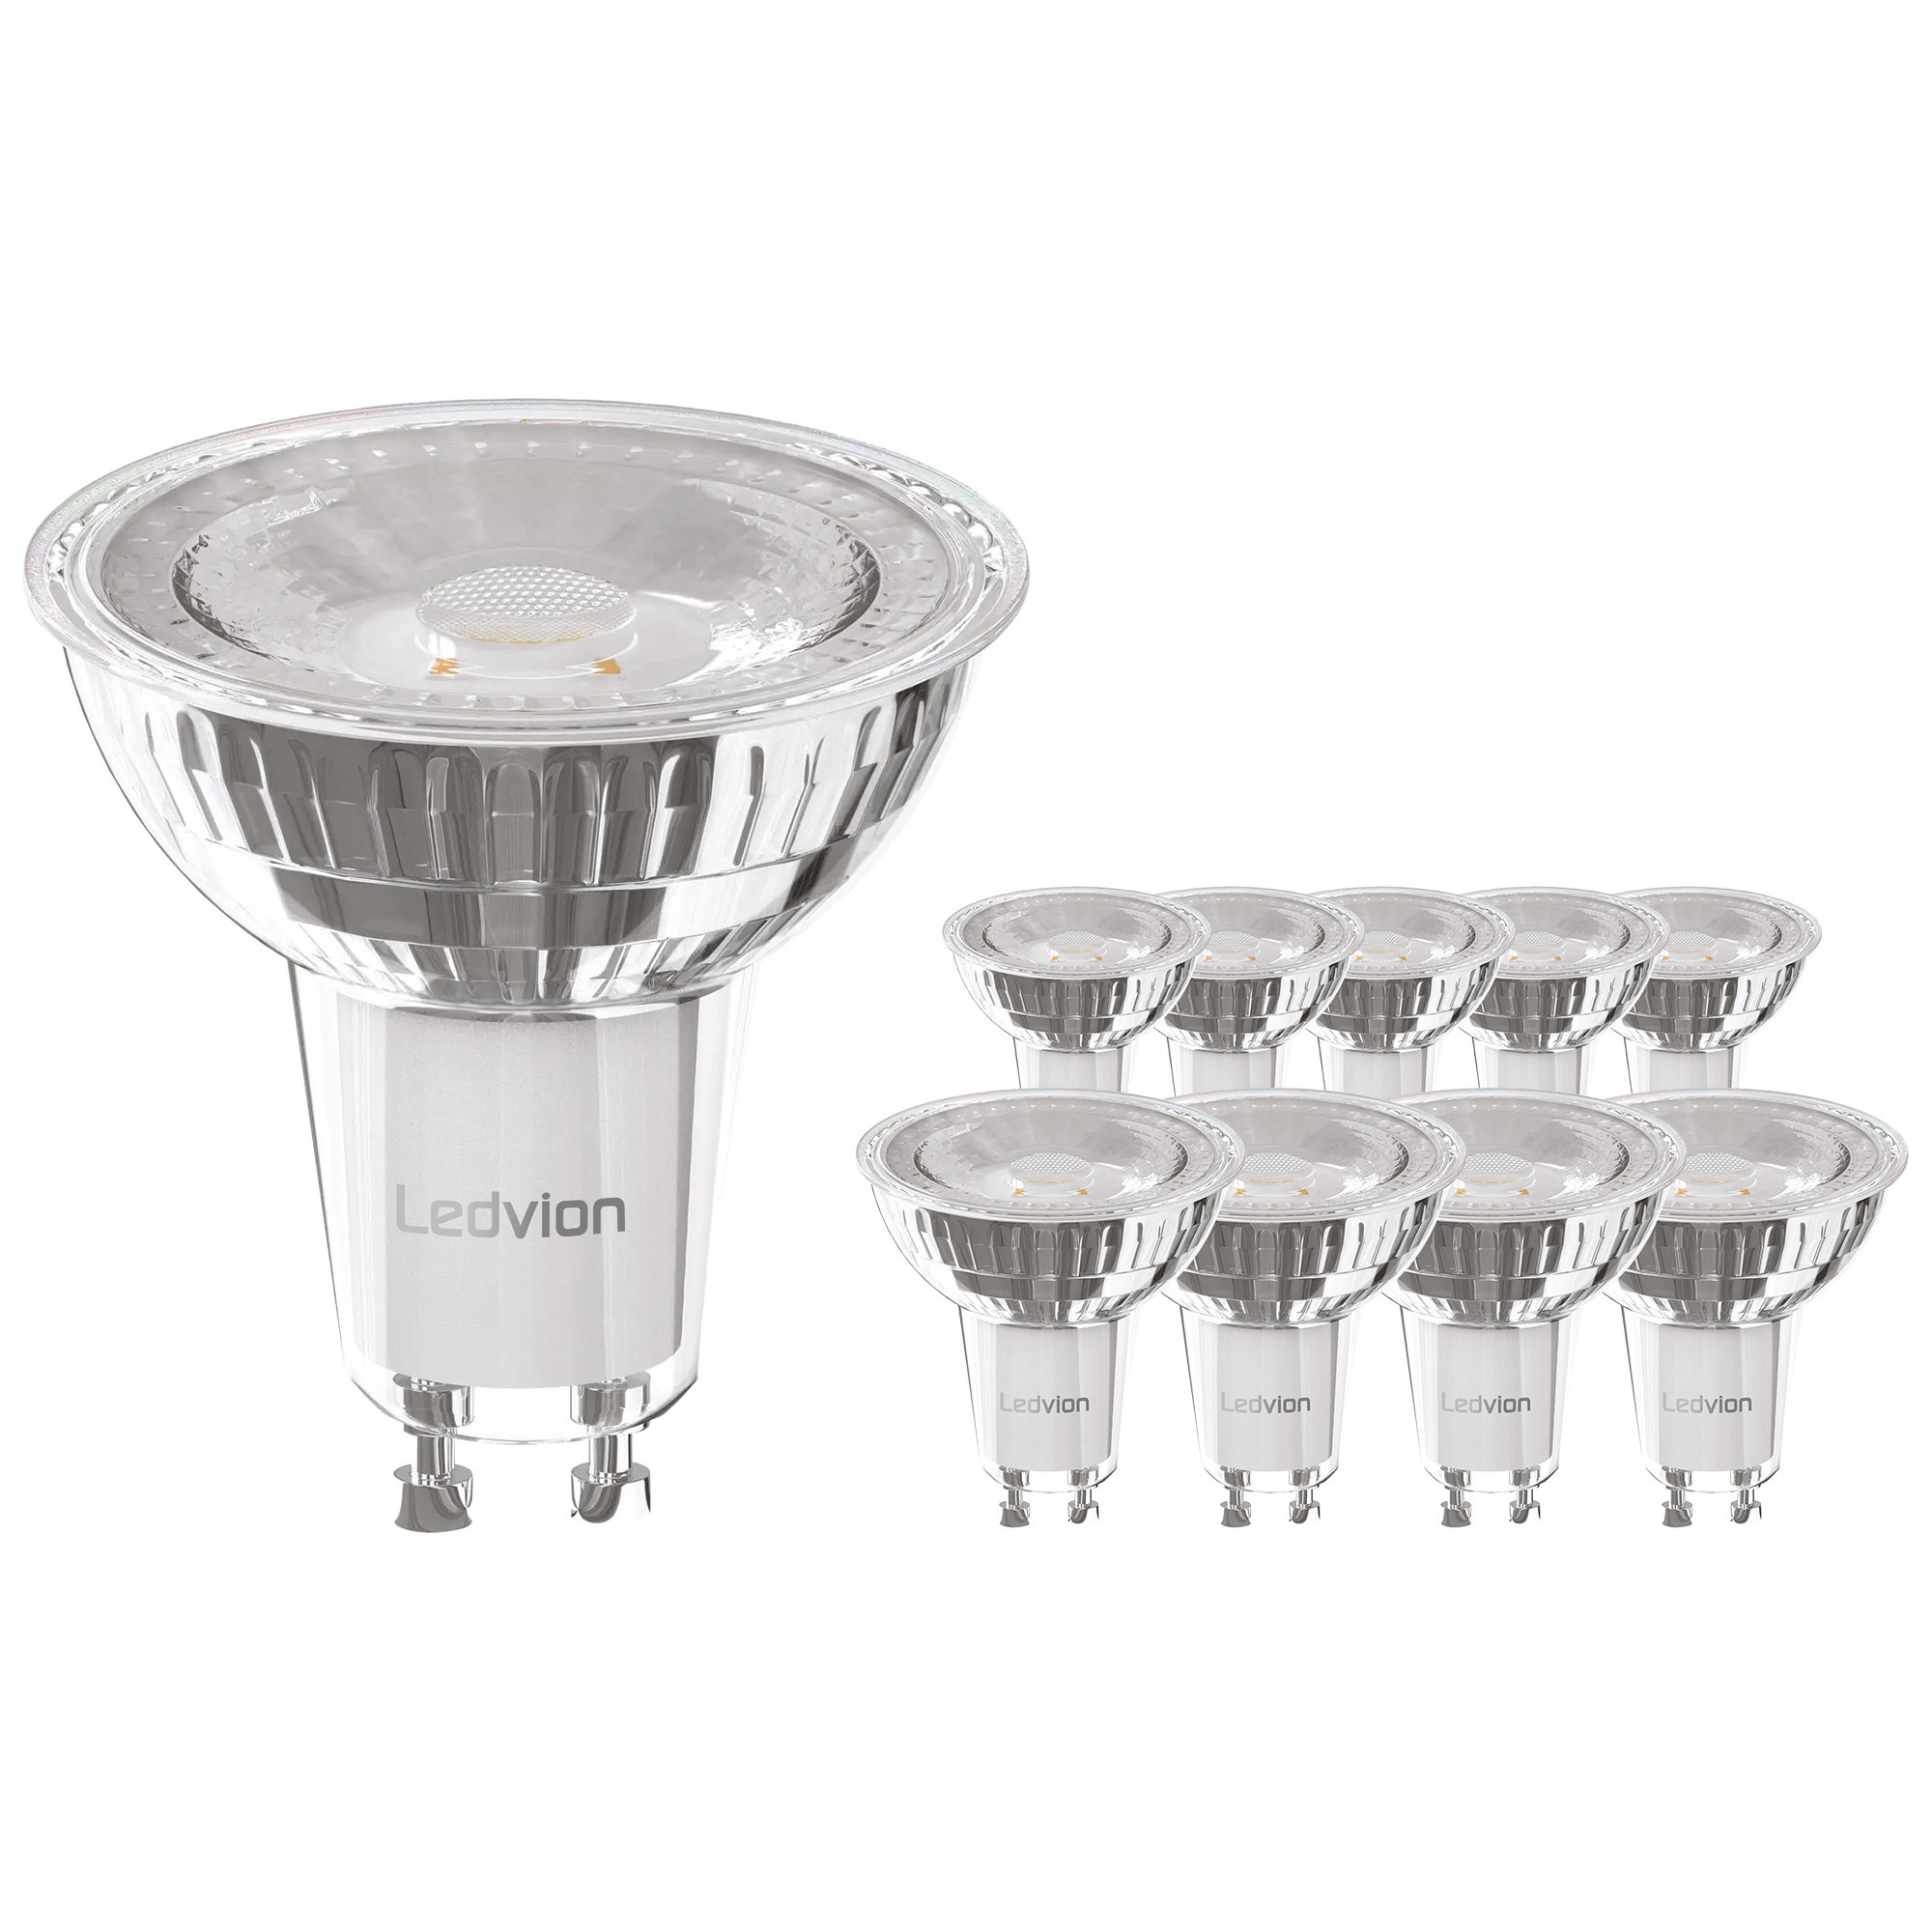 Ledvion Voordeelpak LED Dimbaar | LED Spots - Lightexpert.nl